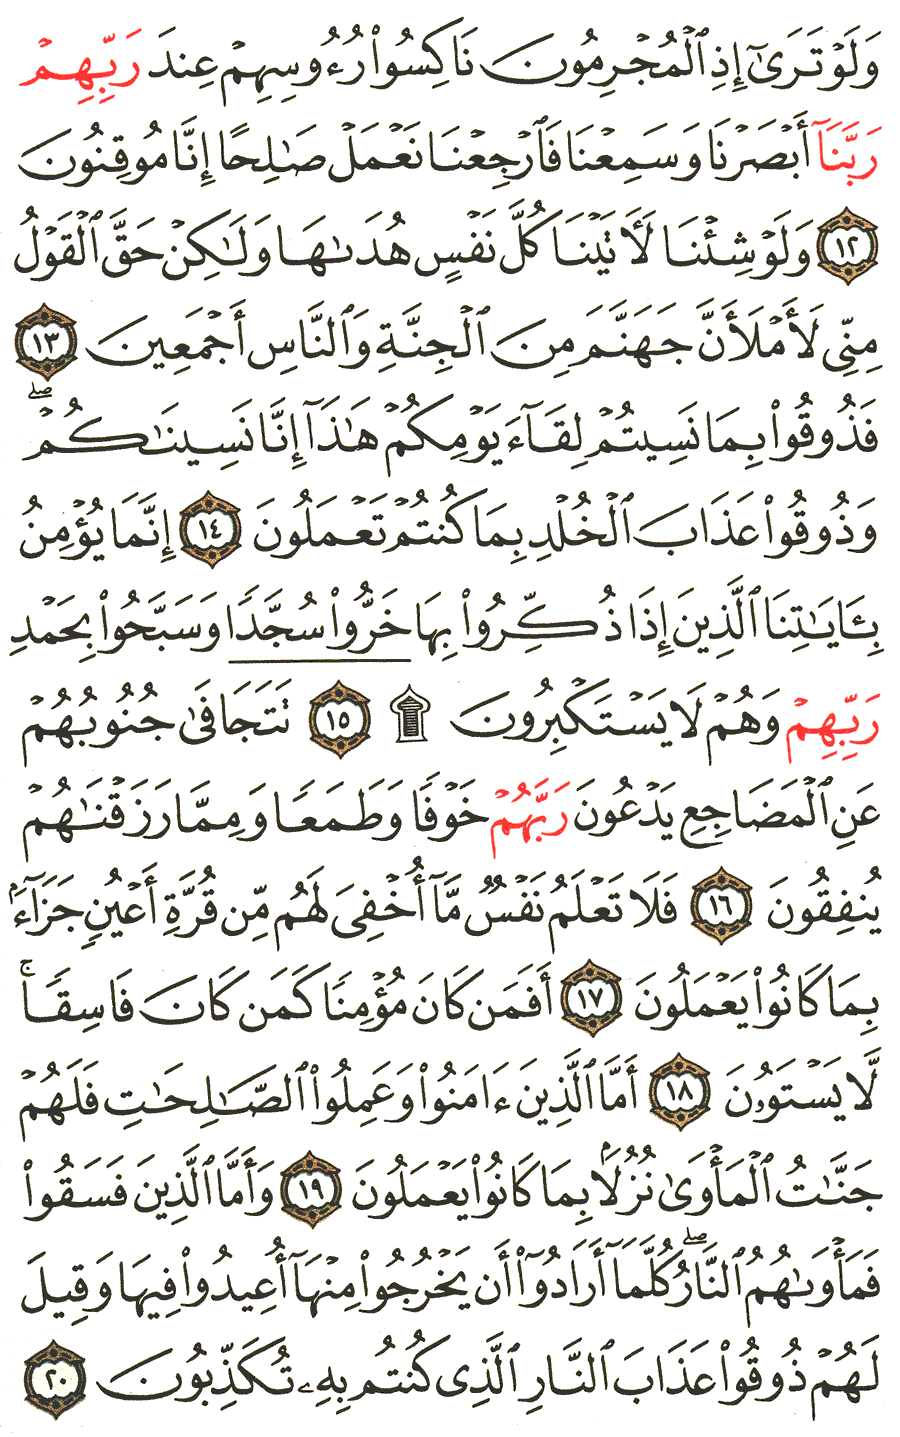 الصفحة رقم 416 من القرآن الكريم مكتوبة من المصحف